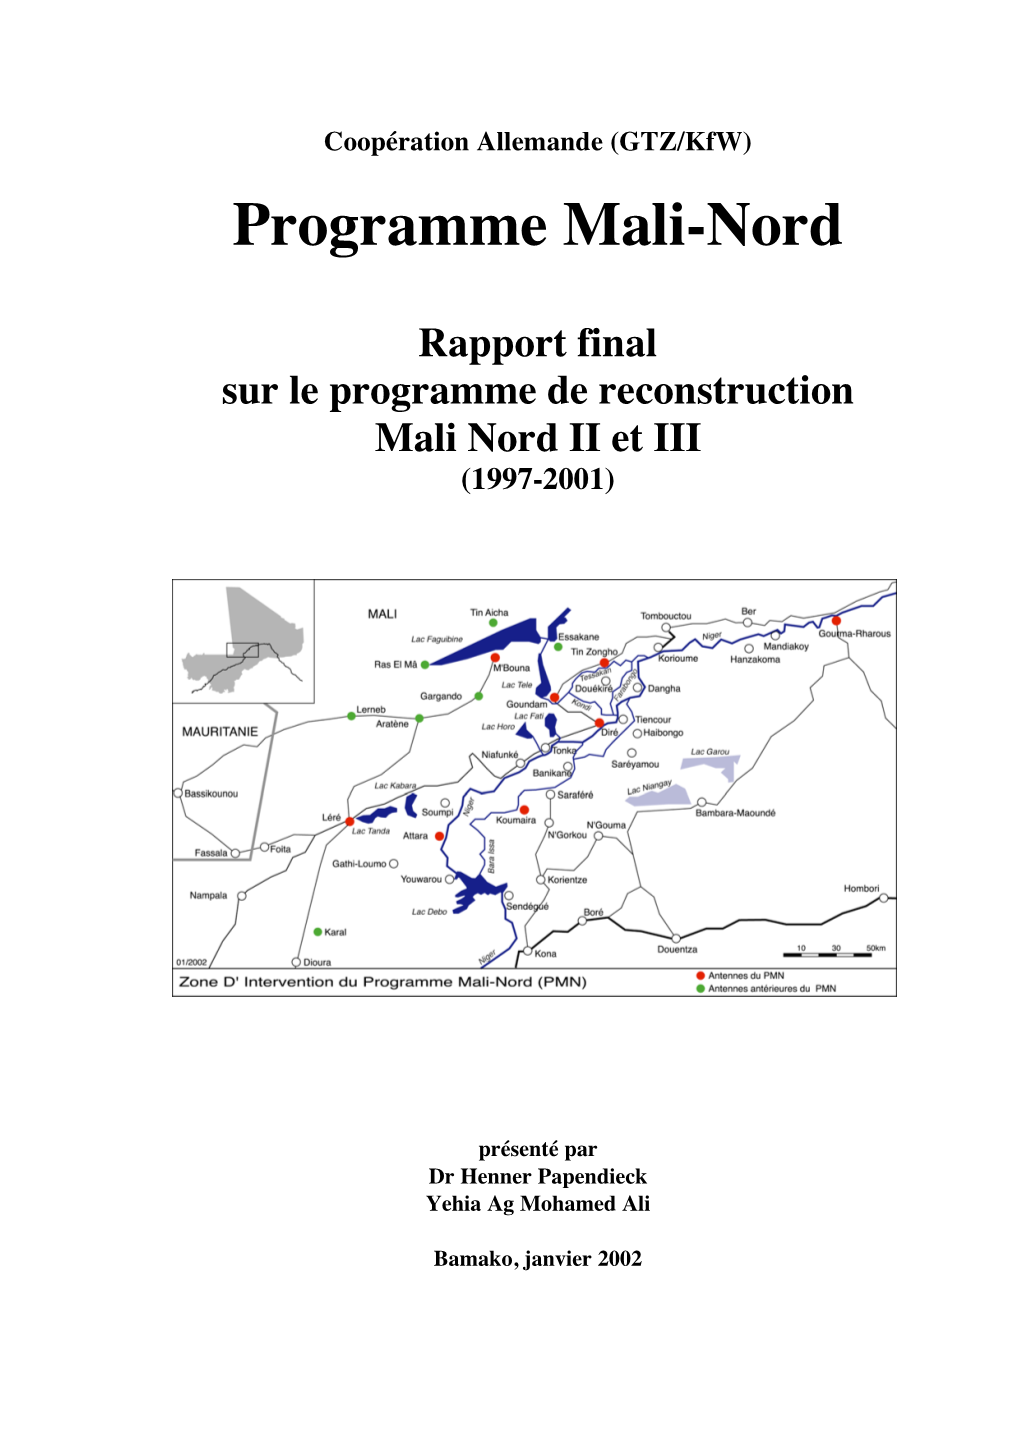 Rapport Final Sur Le Programme De Reconstruction Mali Nord II Et III (1997-2001)